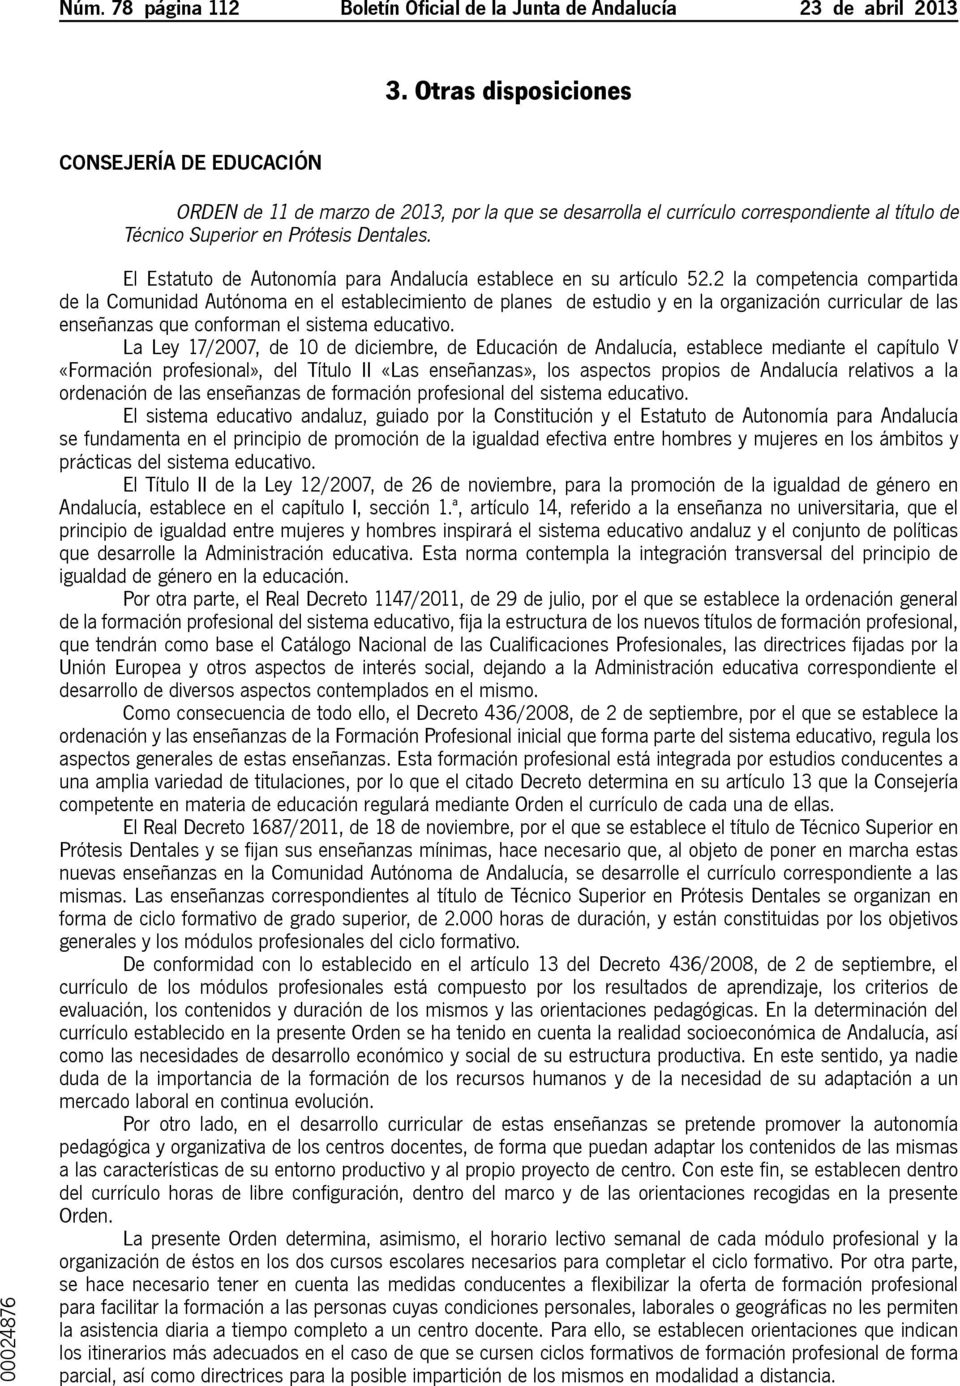 El Estatuto de Autonomía para Andalucía establece en su artículo 52.